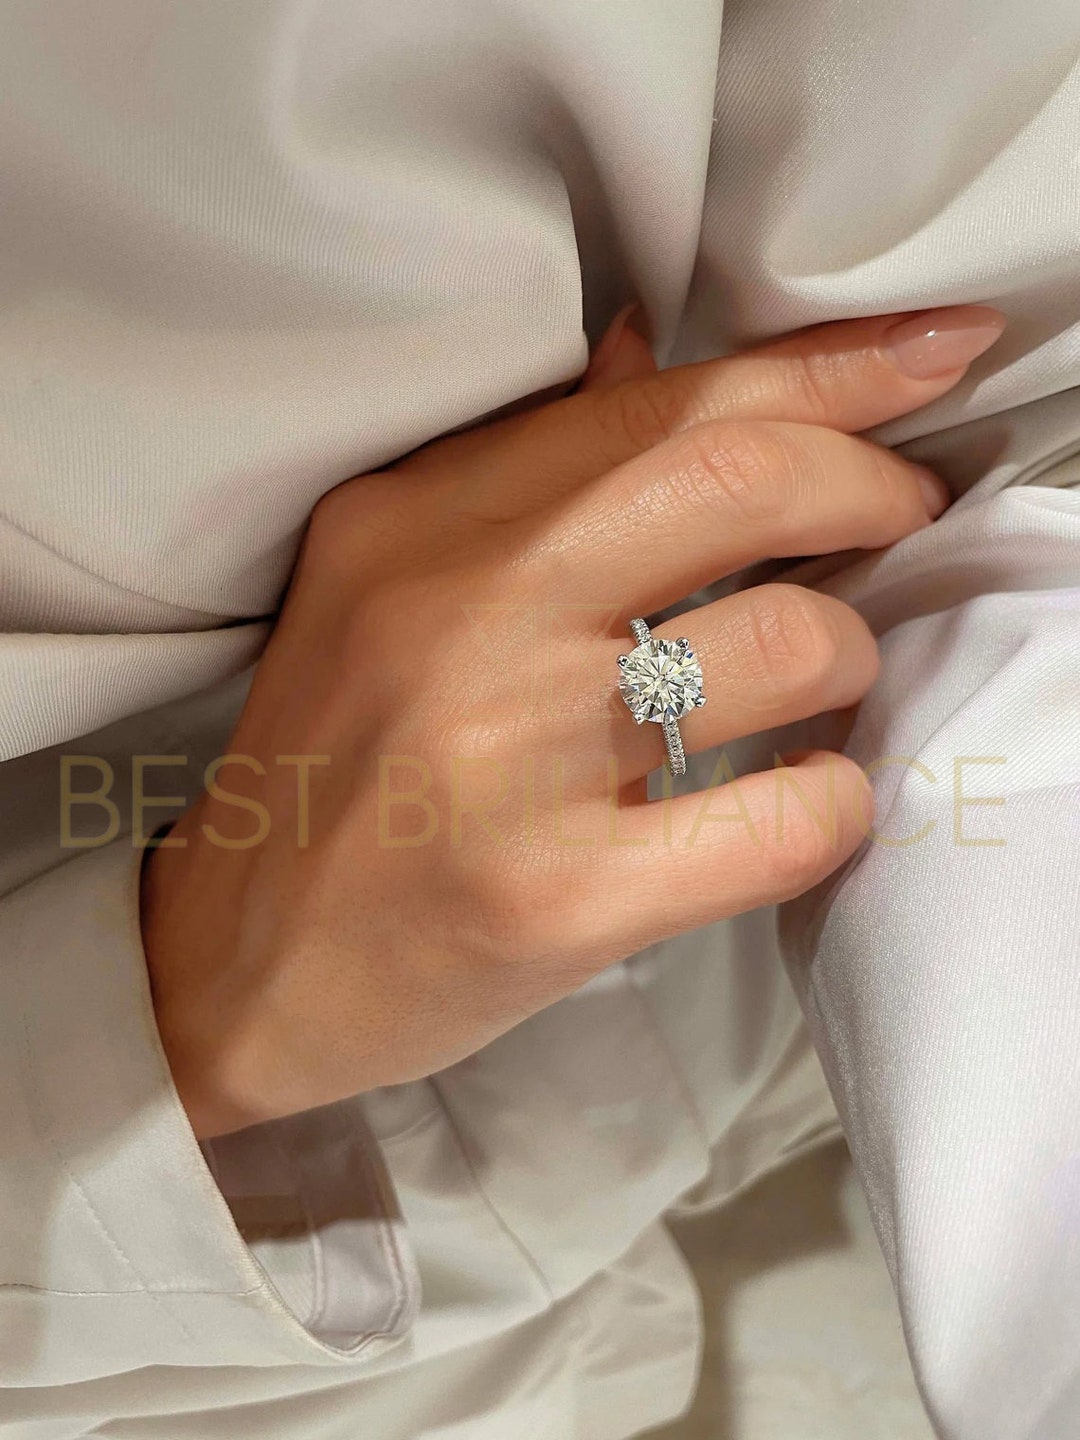 2.8 Carat Diamond Engagement Ring, 14K White Gold, Round Engagement Ring,  Pave Style Engagement Ring, Diamond Ring, Diamond, Free Shipping 